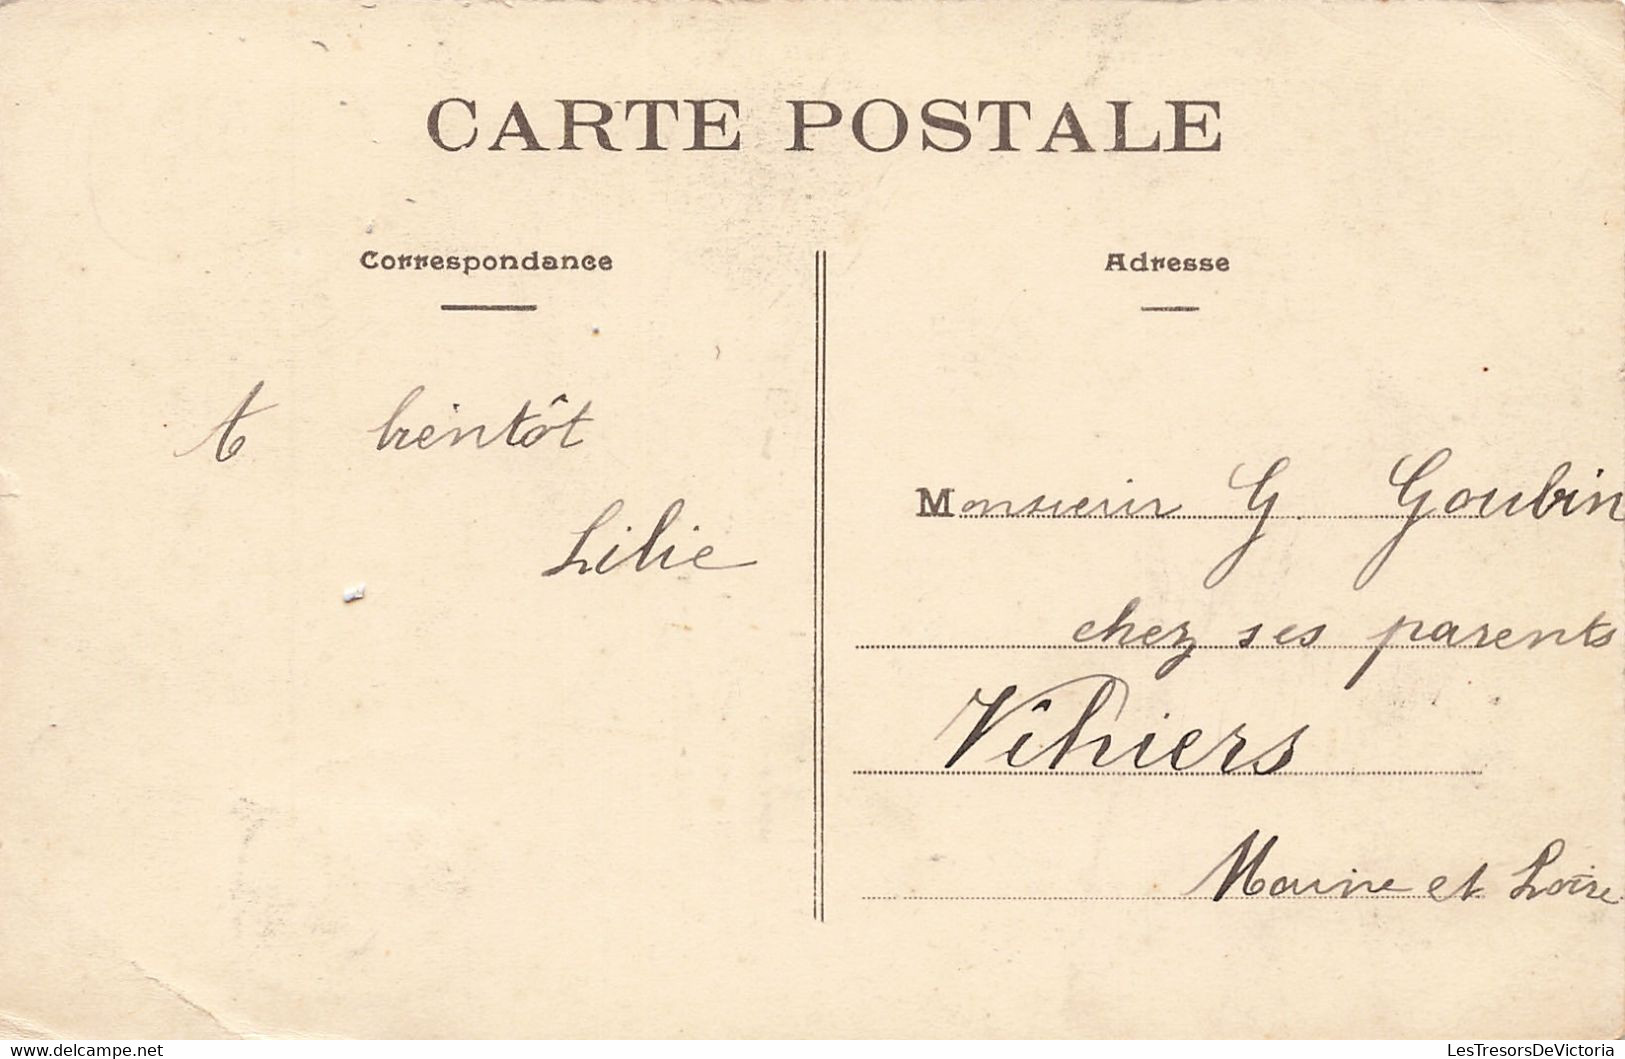 France - Nantes - Souvenir De La Grande Semaine Maritime - Aout 1908 - Les Régates Dans Le Port - Carte Postale Ancienne - Nantes